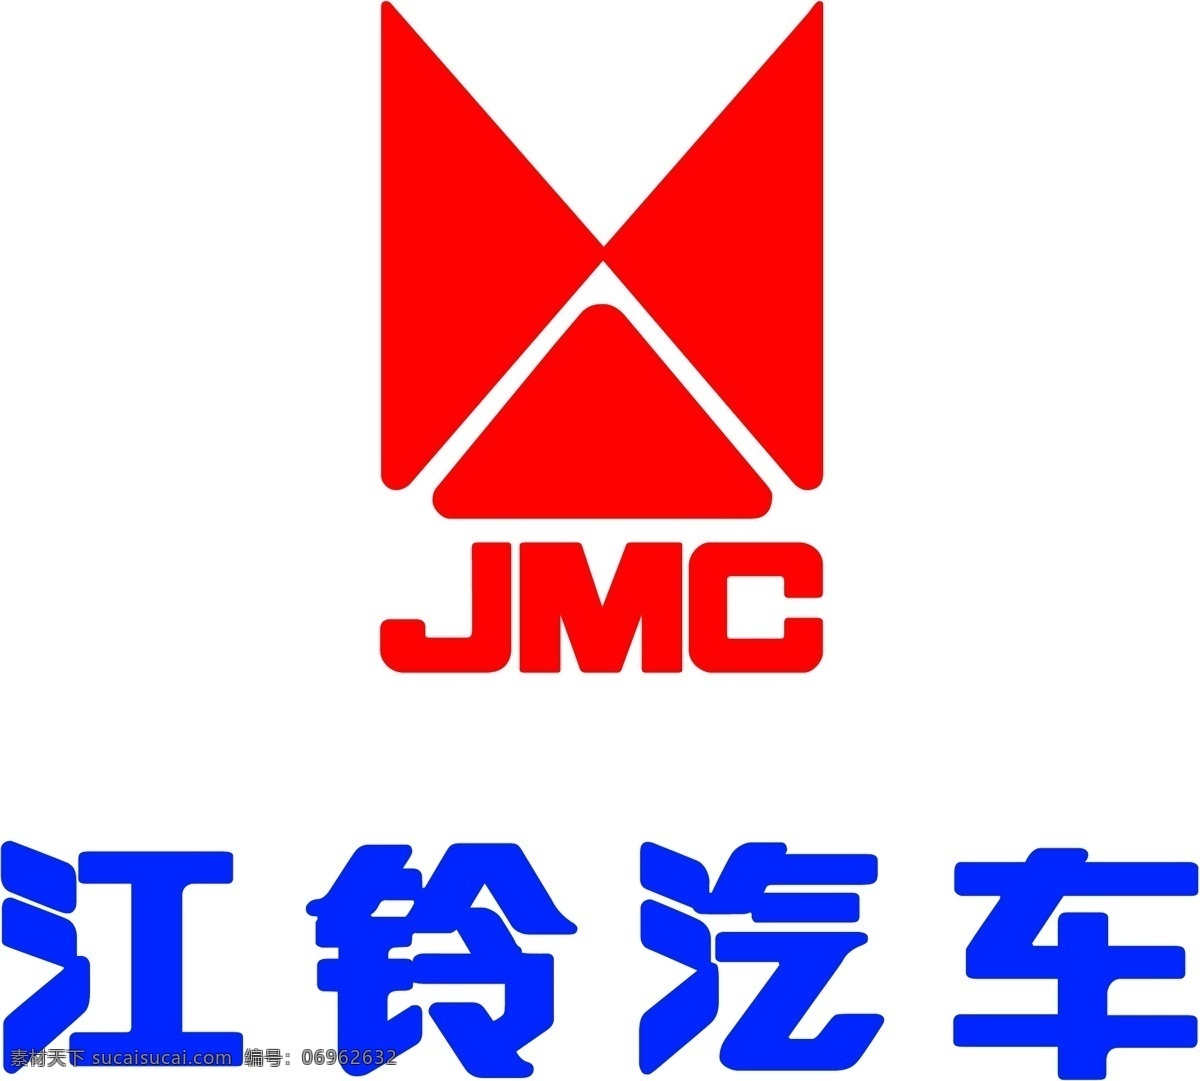 江铃汽车标志 江铃汽车 汽车标志 jmc 标志大全 企业 logo 标志 标识标志图标 矢量